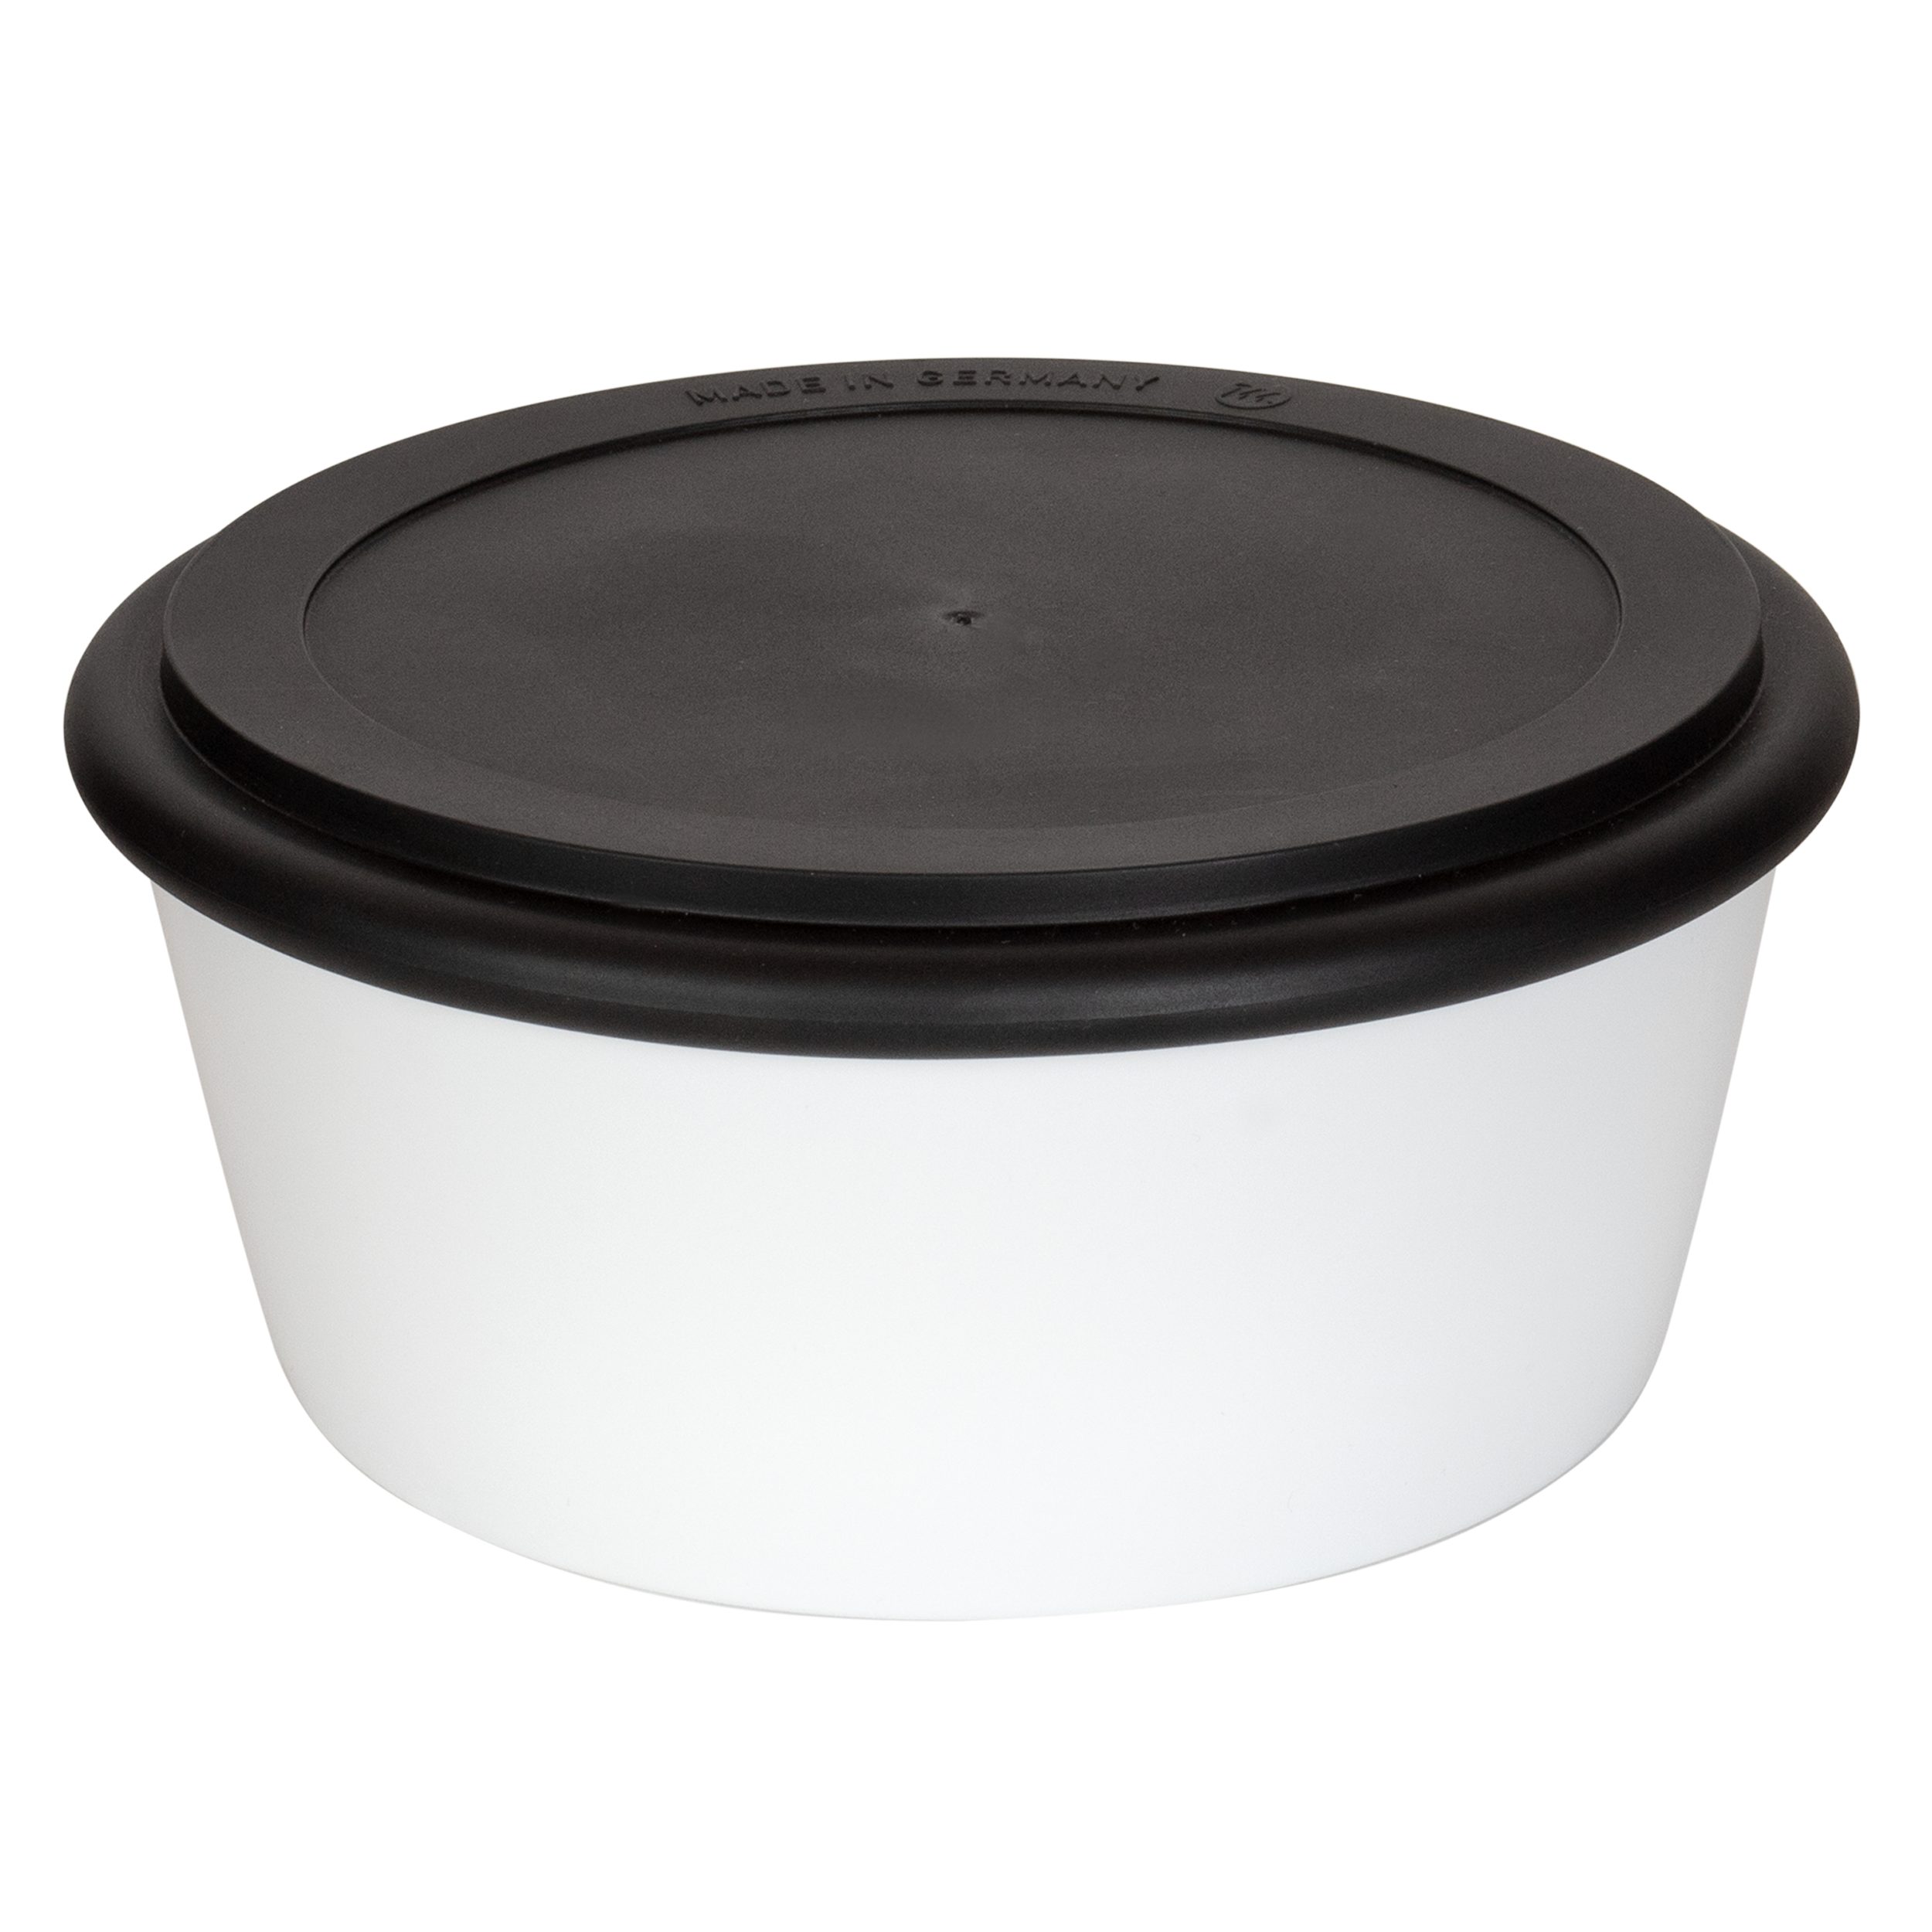 Mahlwerck Manufaktur Lunchbox Bowl2Go, Porzellan, (Lunchbox mit auslaufsicherem Deckel), spülmaschinengeeignet, mikrowellengeeignet, 100% klimaneutral Pearl White